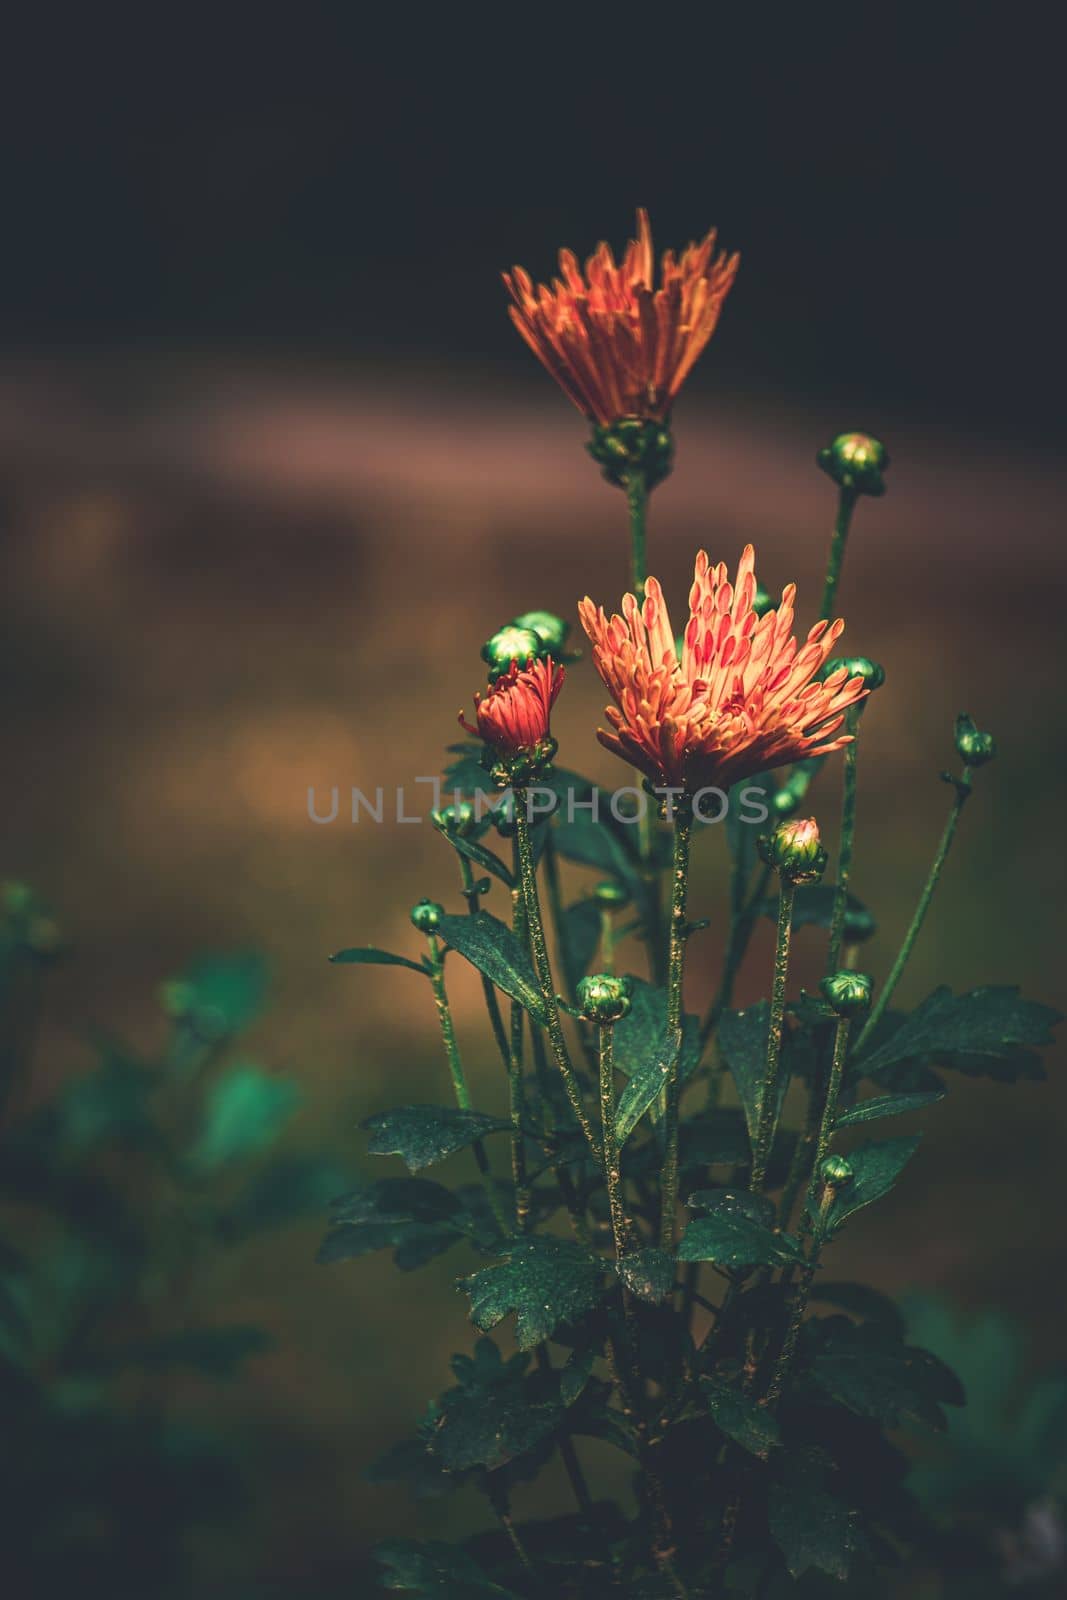 Coimbatore flower, bangladeshi garden flower, by abdulkayum97